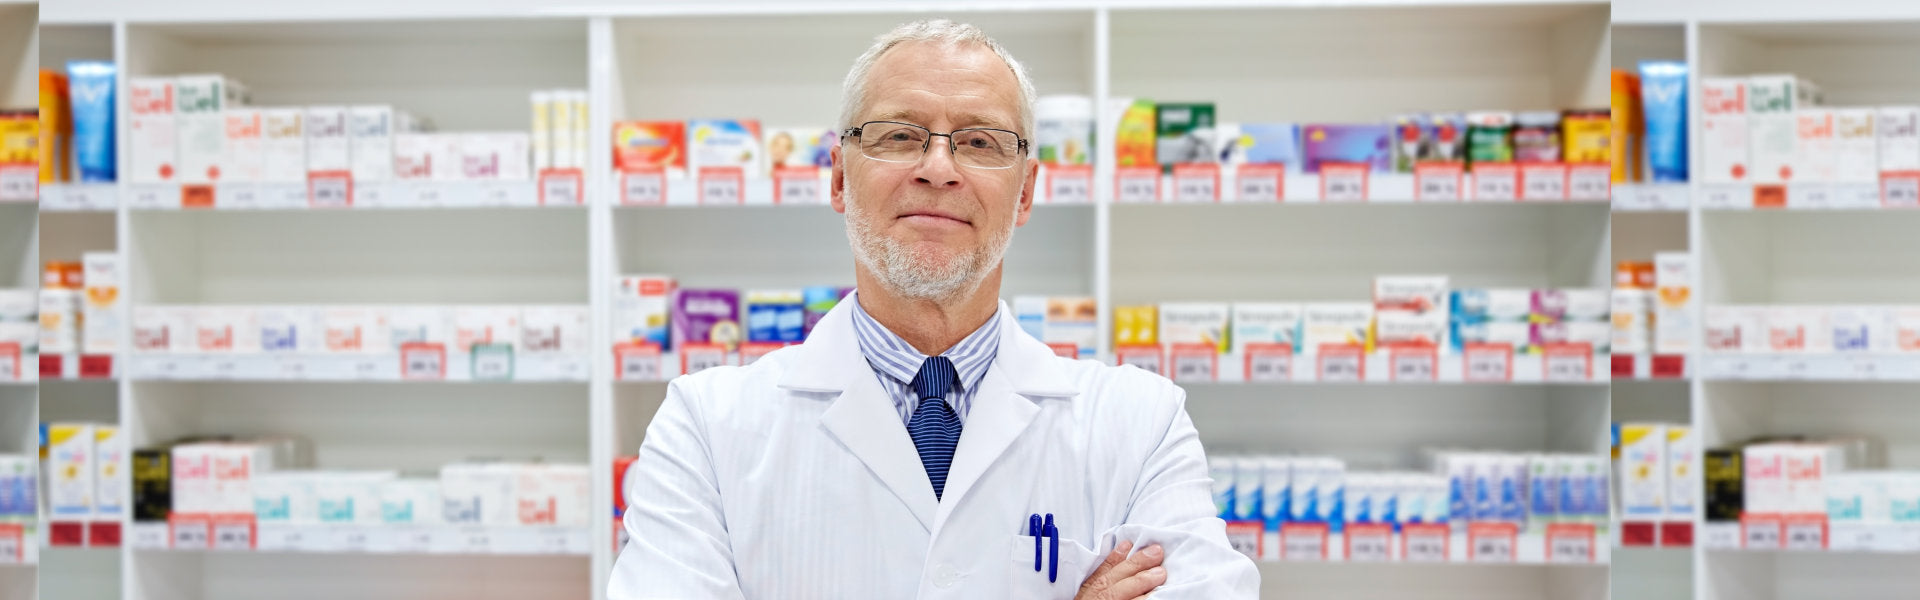 Smiling Pharmacist